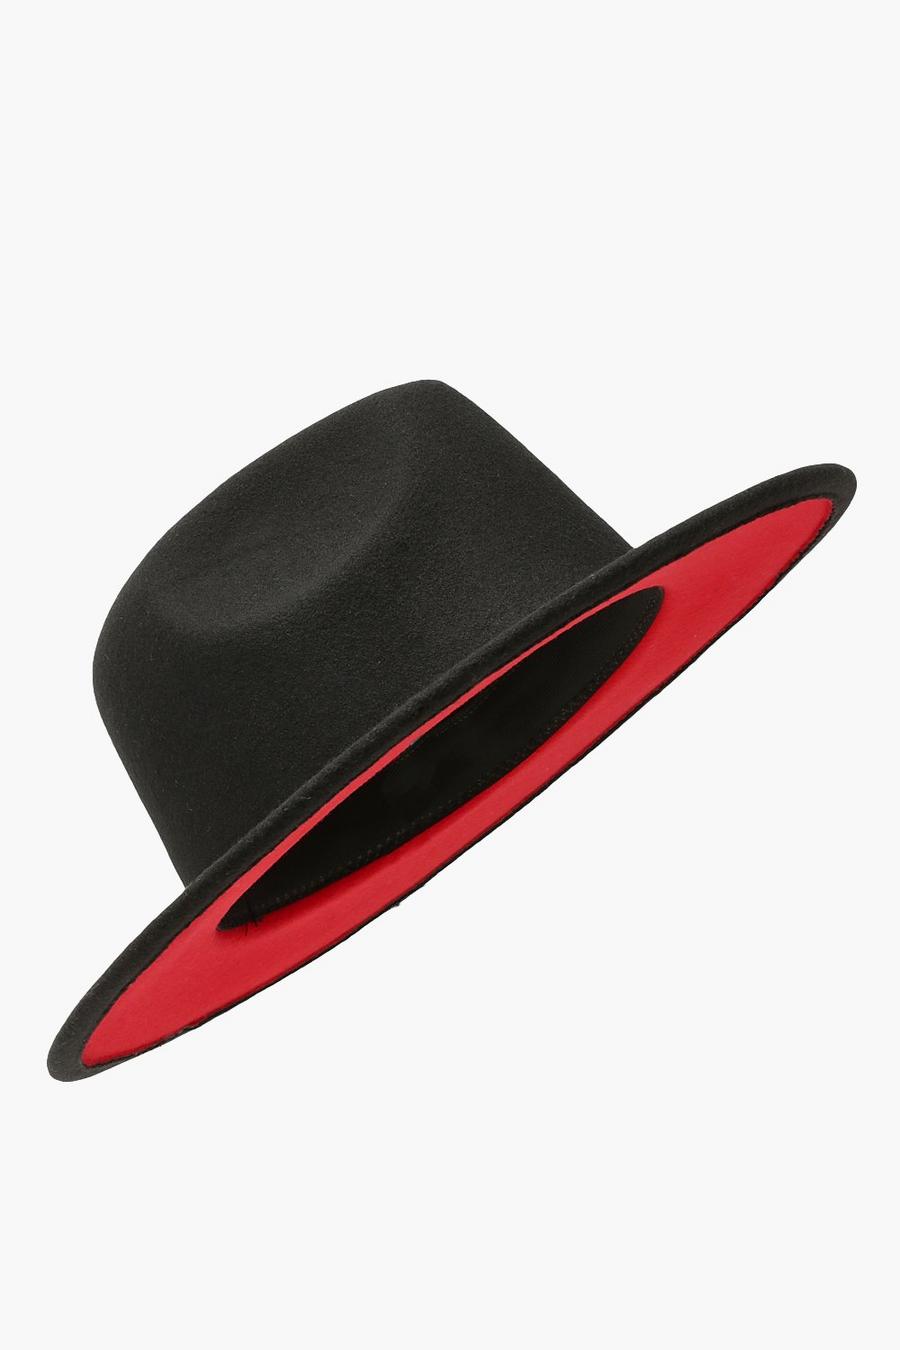 Sombrero con forro interior rojo, Negro nero